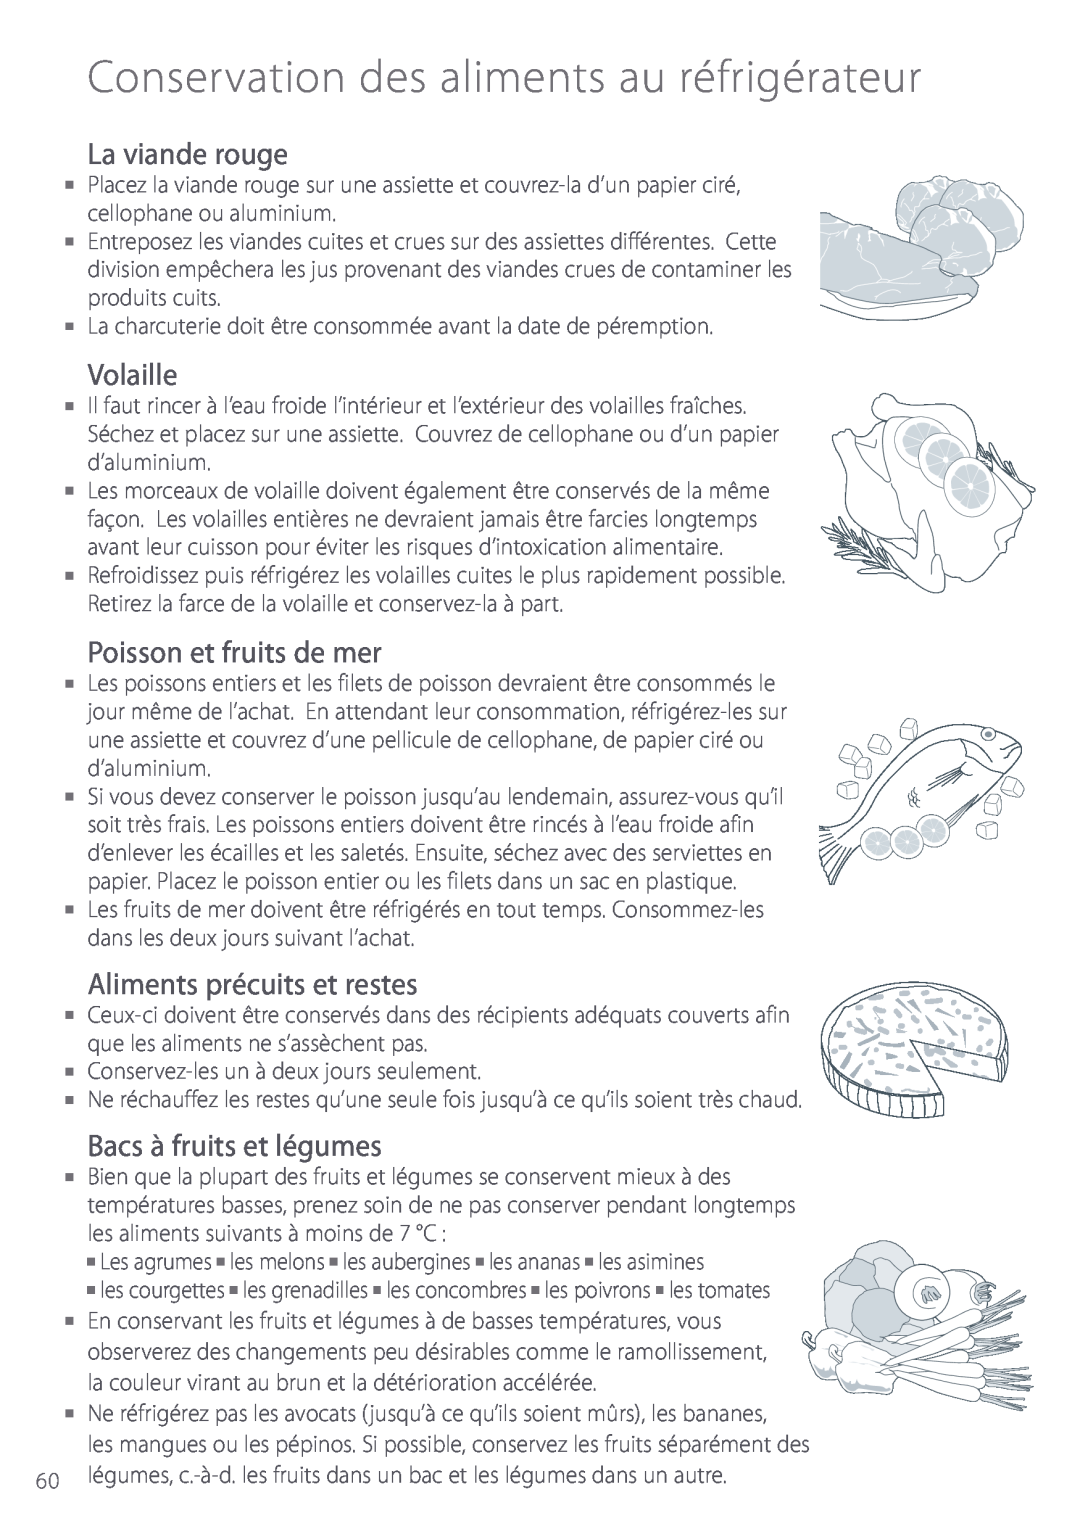 Fisher & Paykel Active Smart manual La viande rouge, Volaille, Poisson et fruits de mer, Aliments précuits et restes 